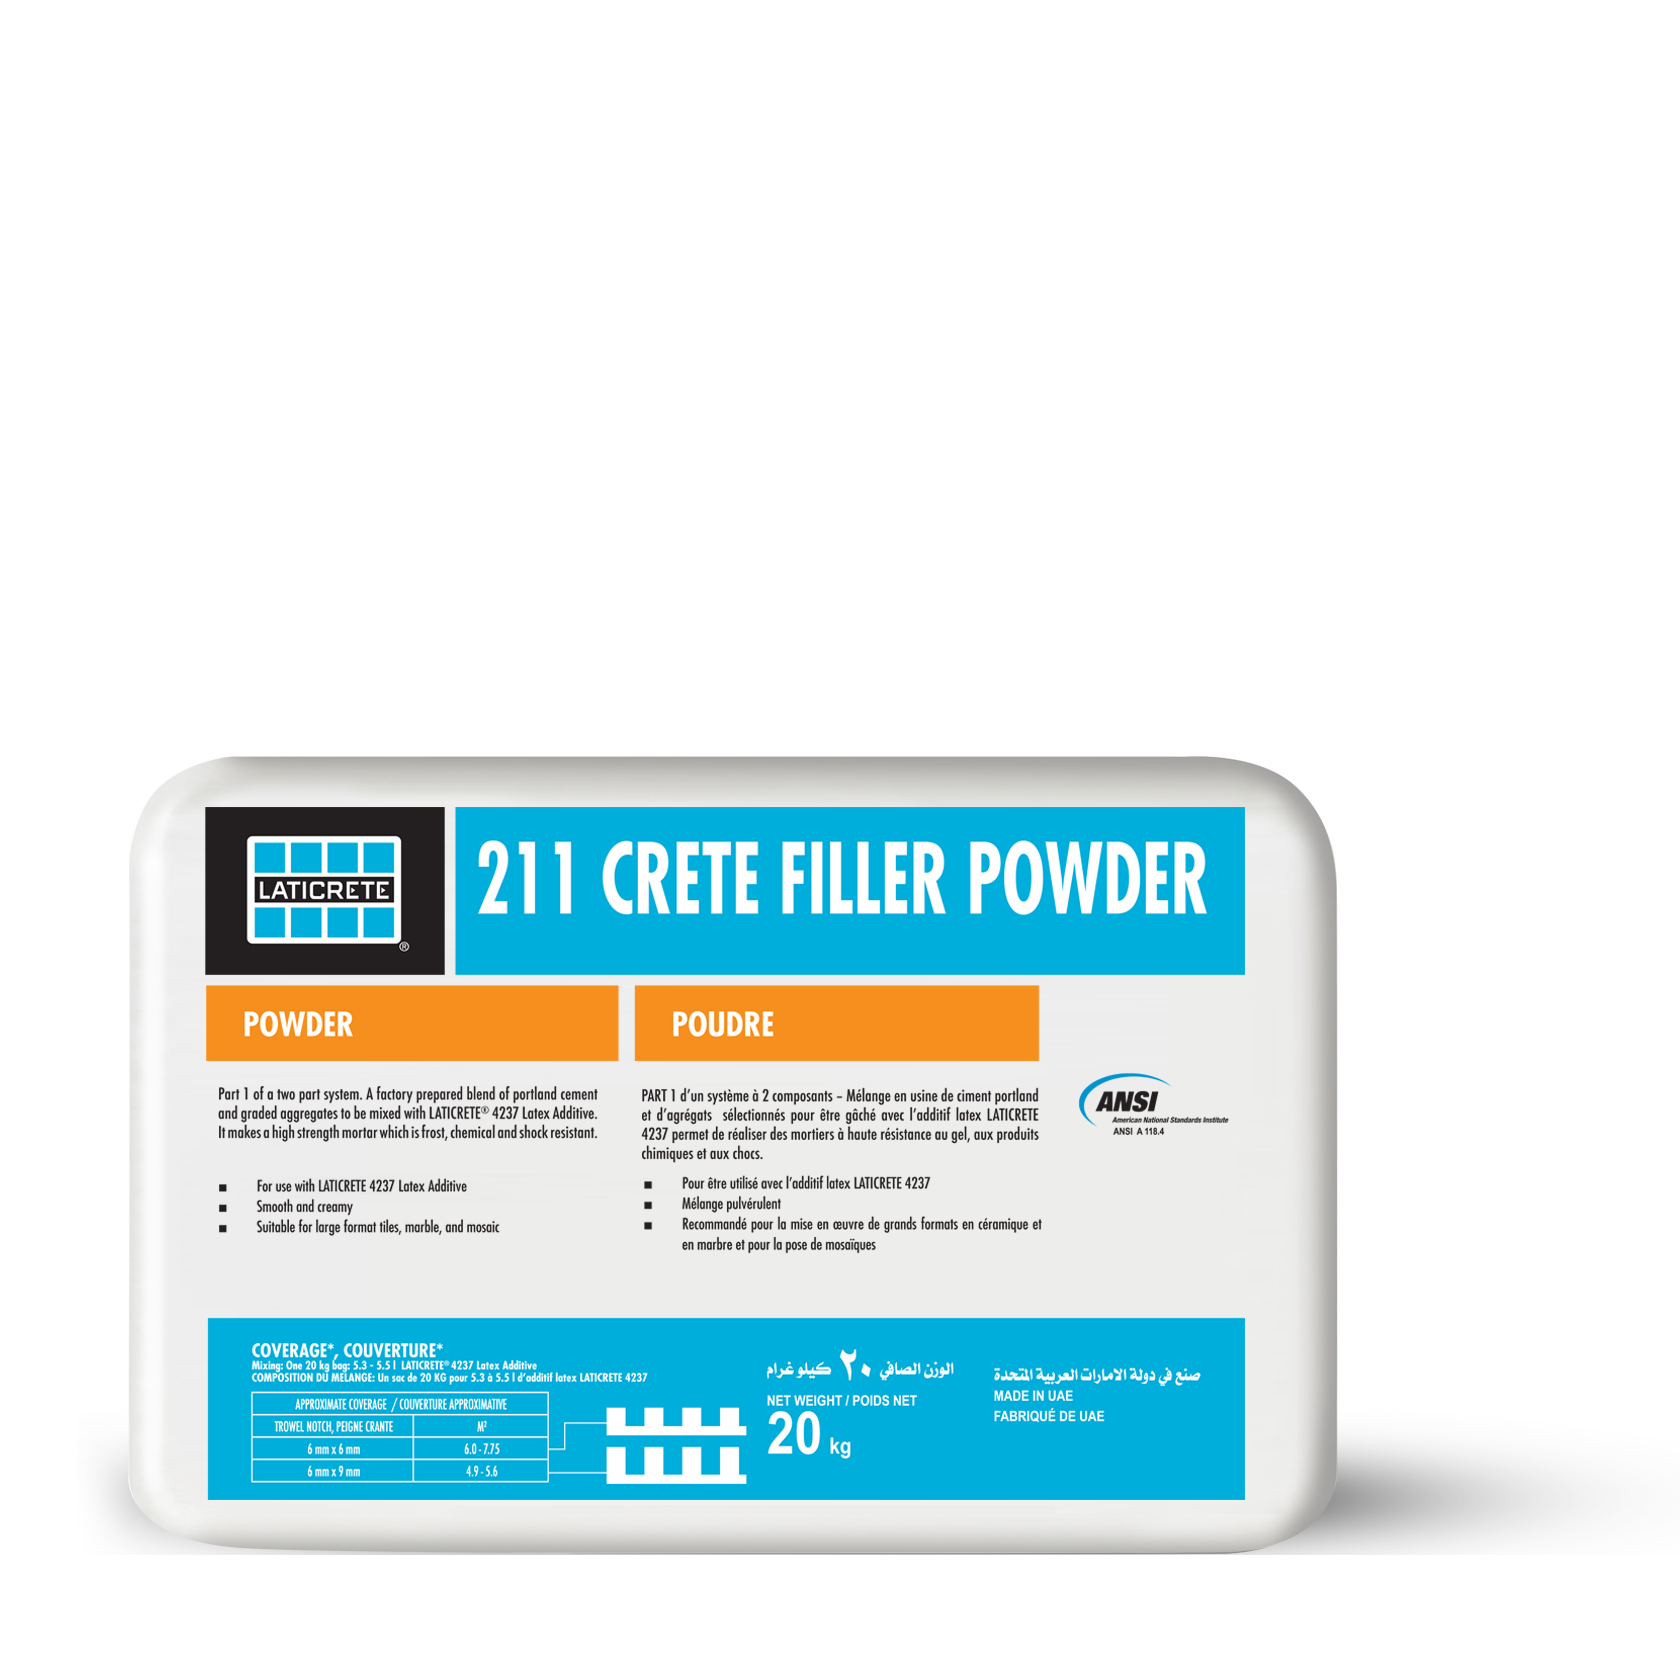 211 Crete Filler Powder